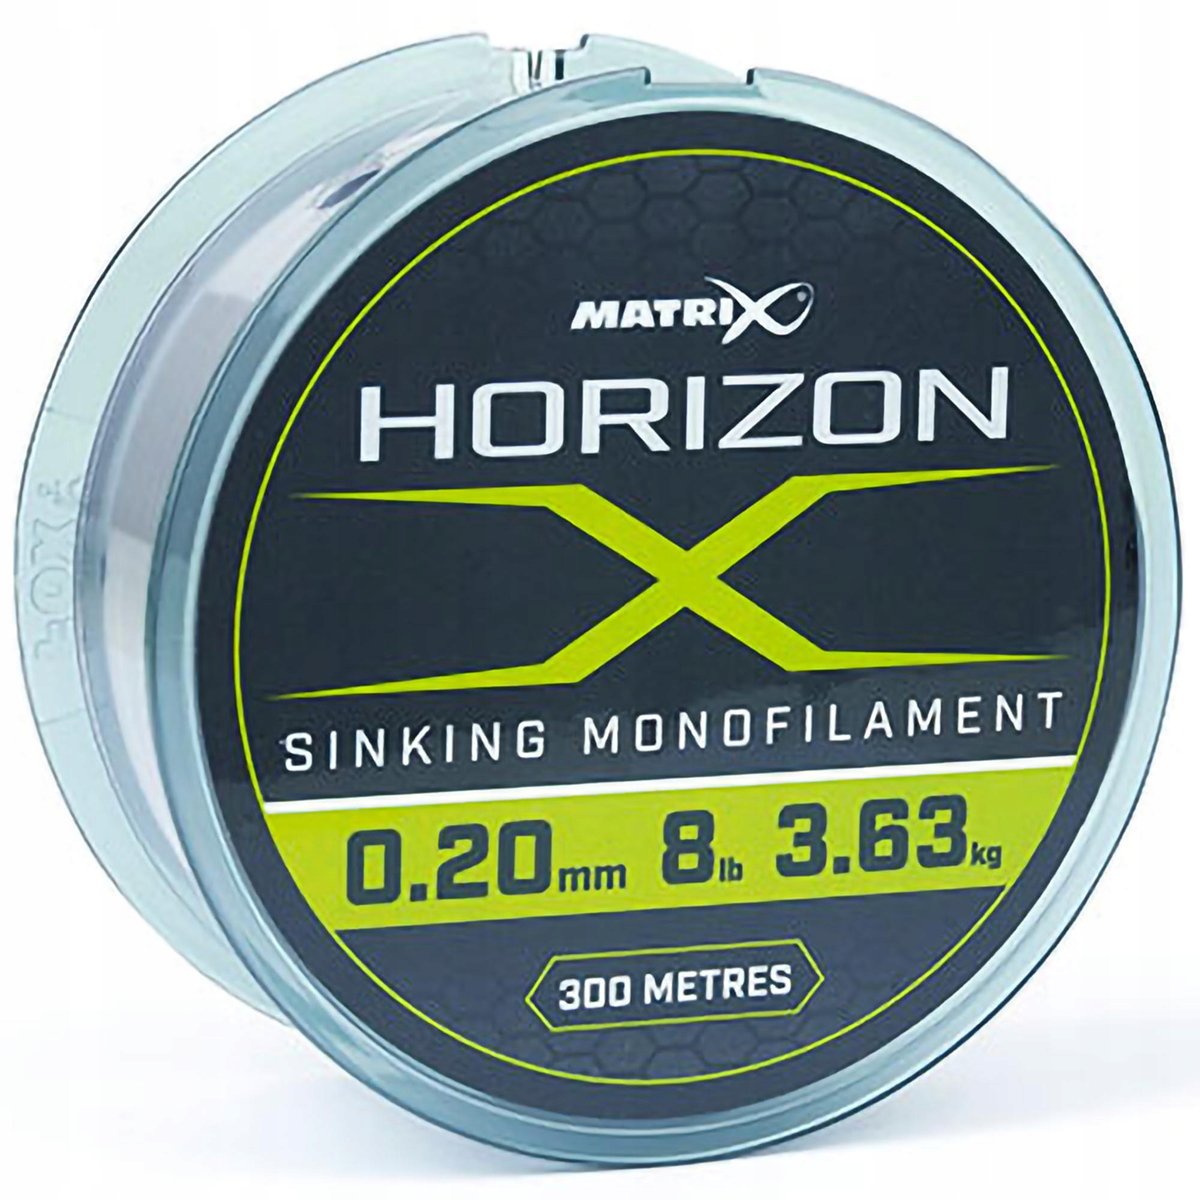 Zdjęcia - Żyłka i sznury Horizon Żyłka Tonąca Feeder Matrix  X Sinking Monofilament 0,24 Mm 300 M 